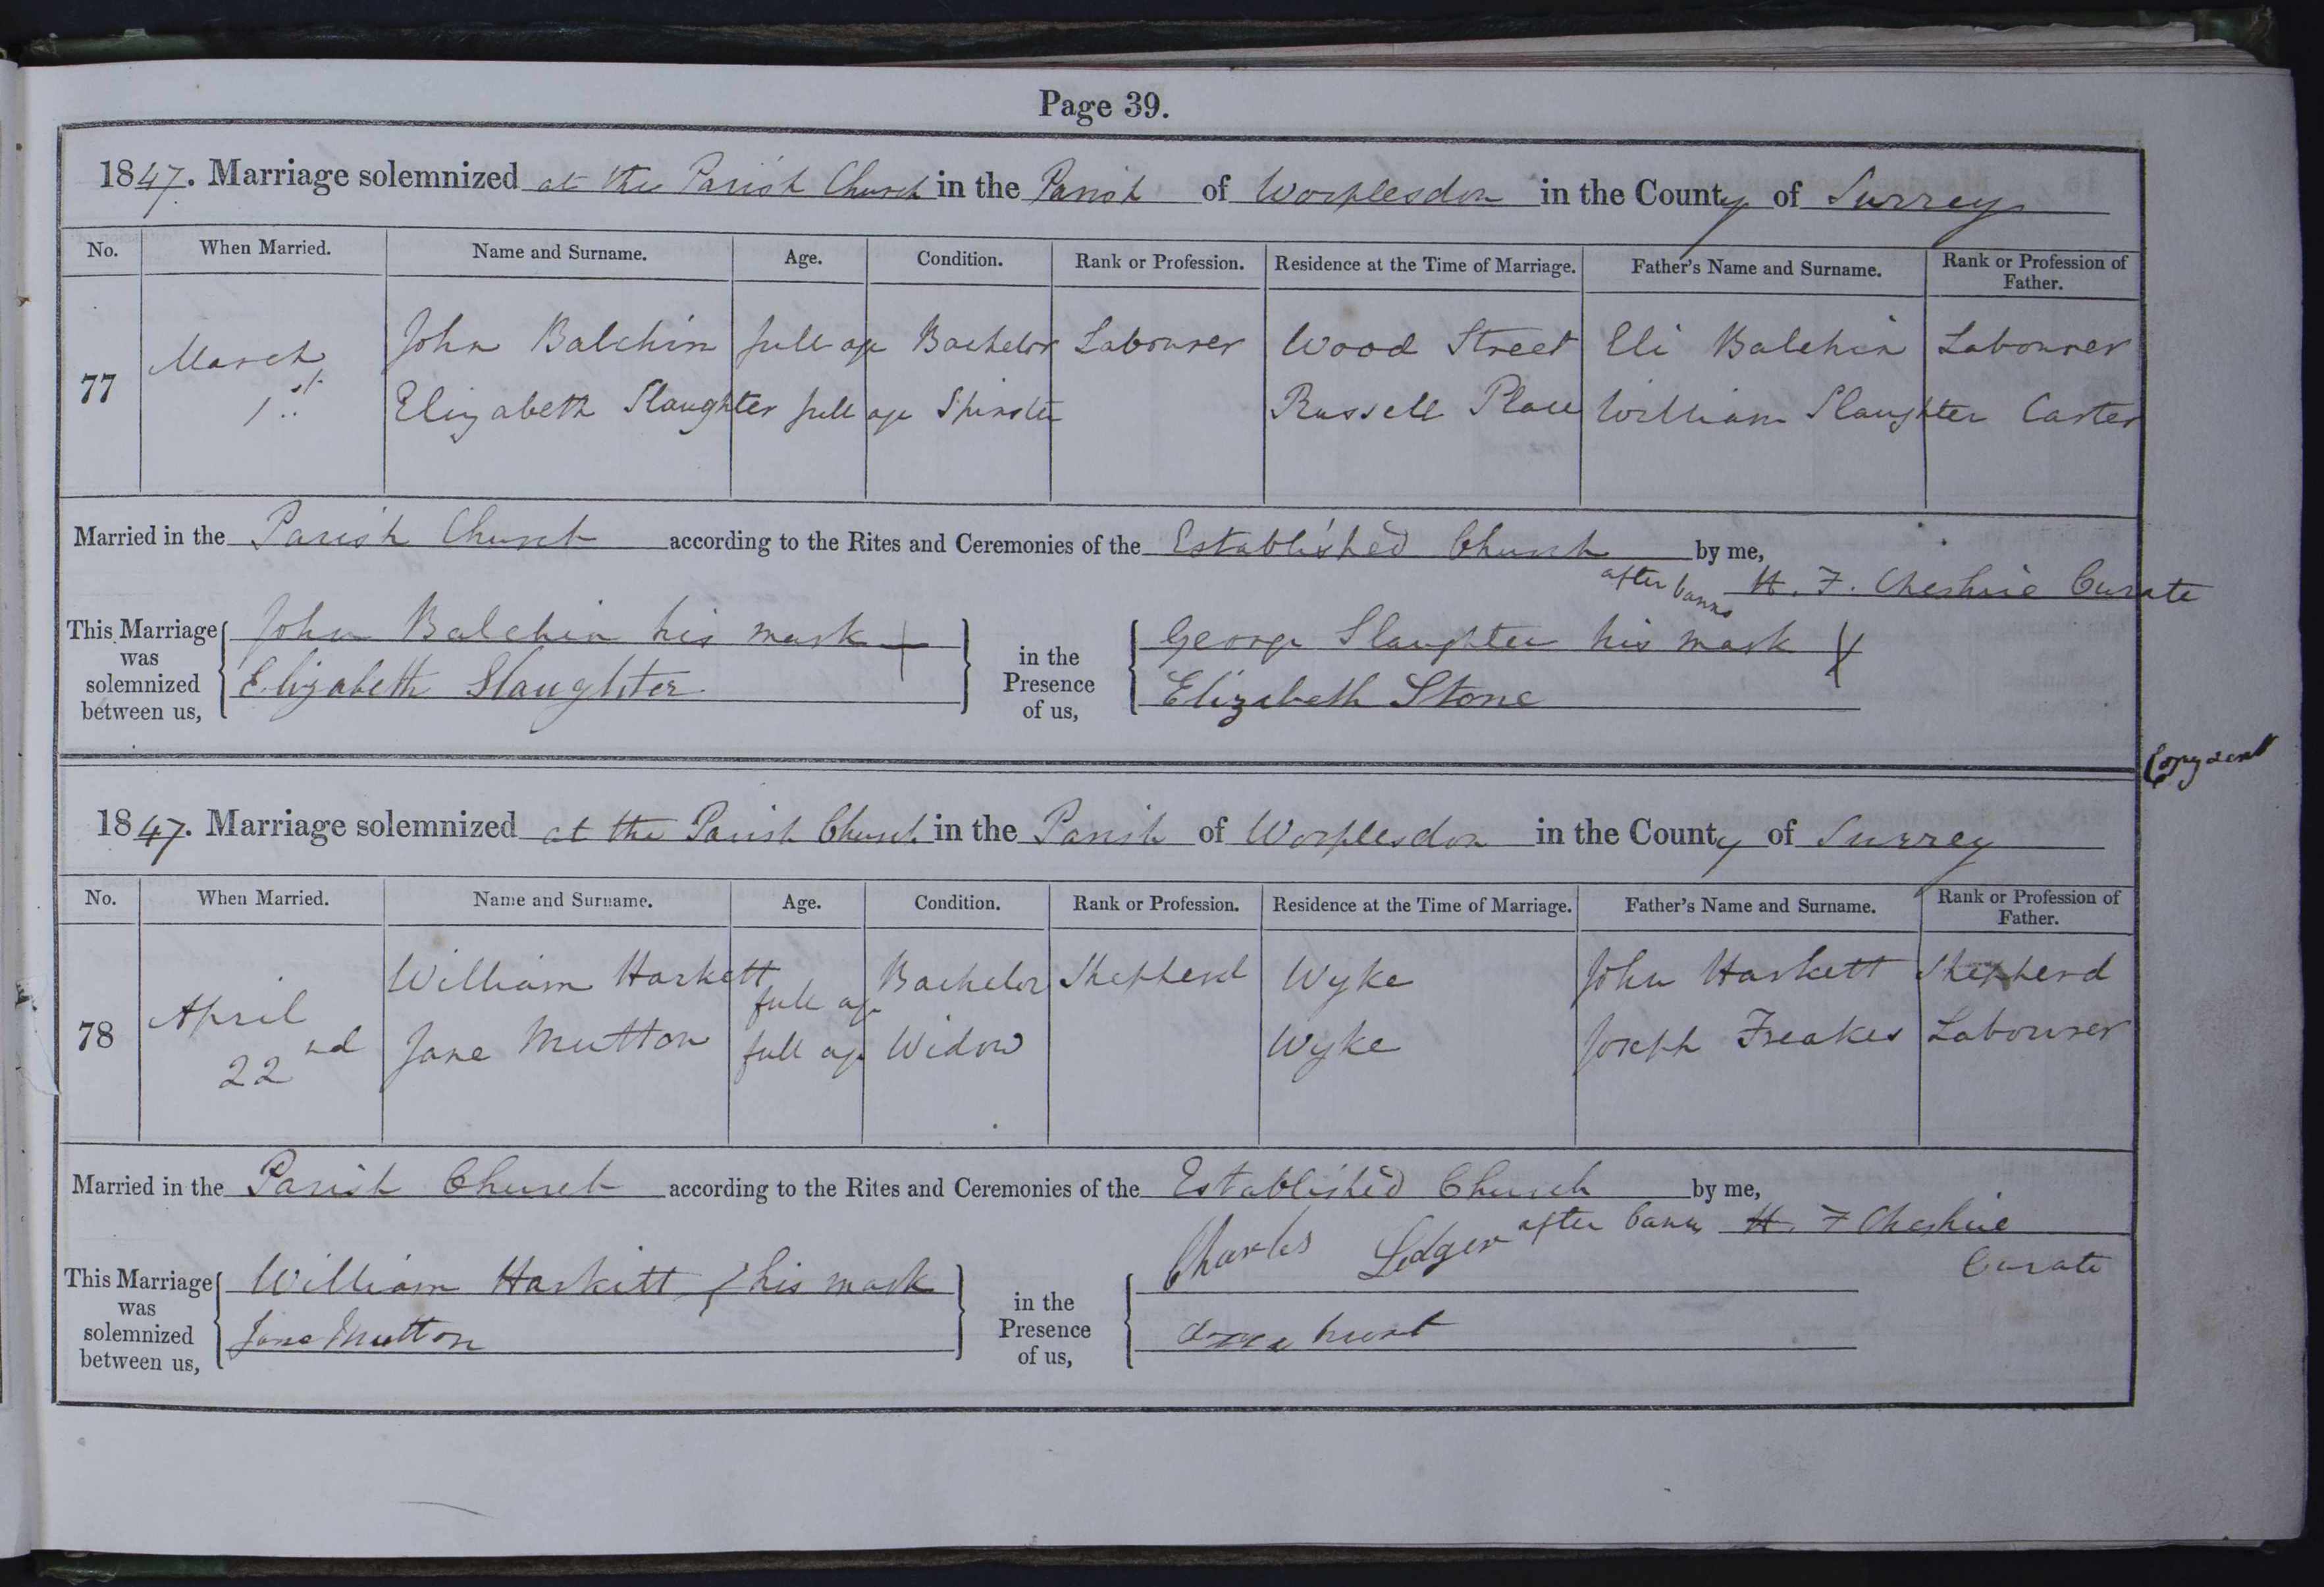 1847 marriage of Jane Mutton to William Daniel Harkett